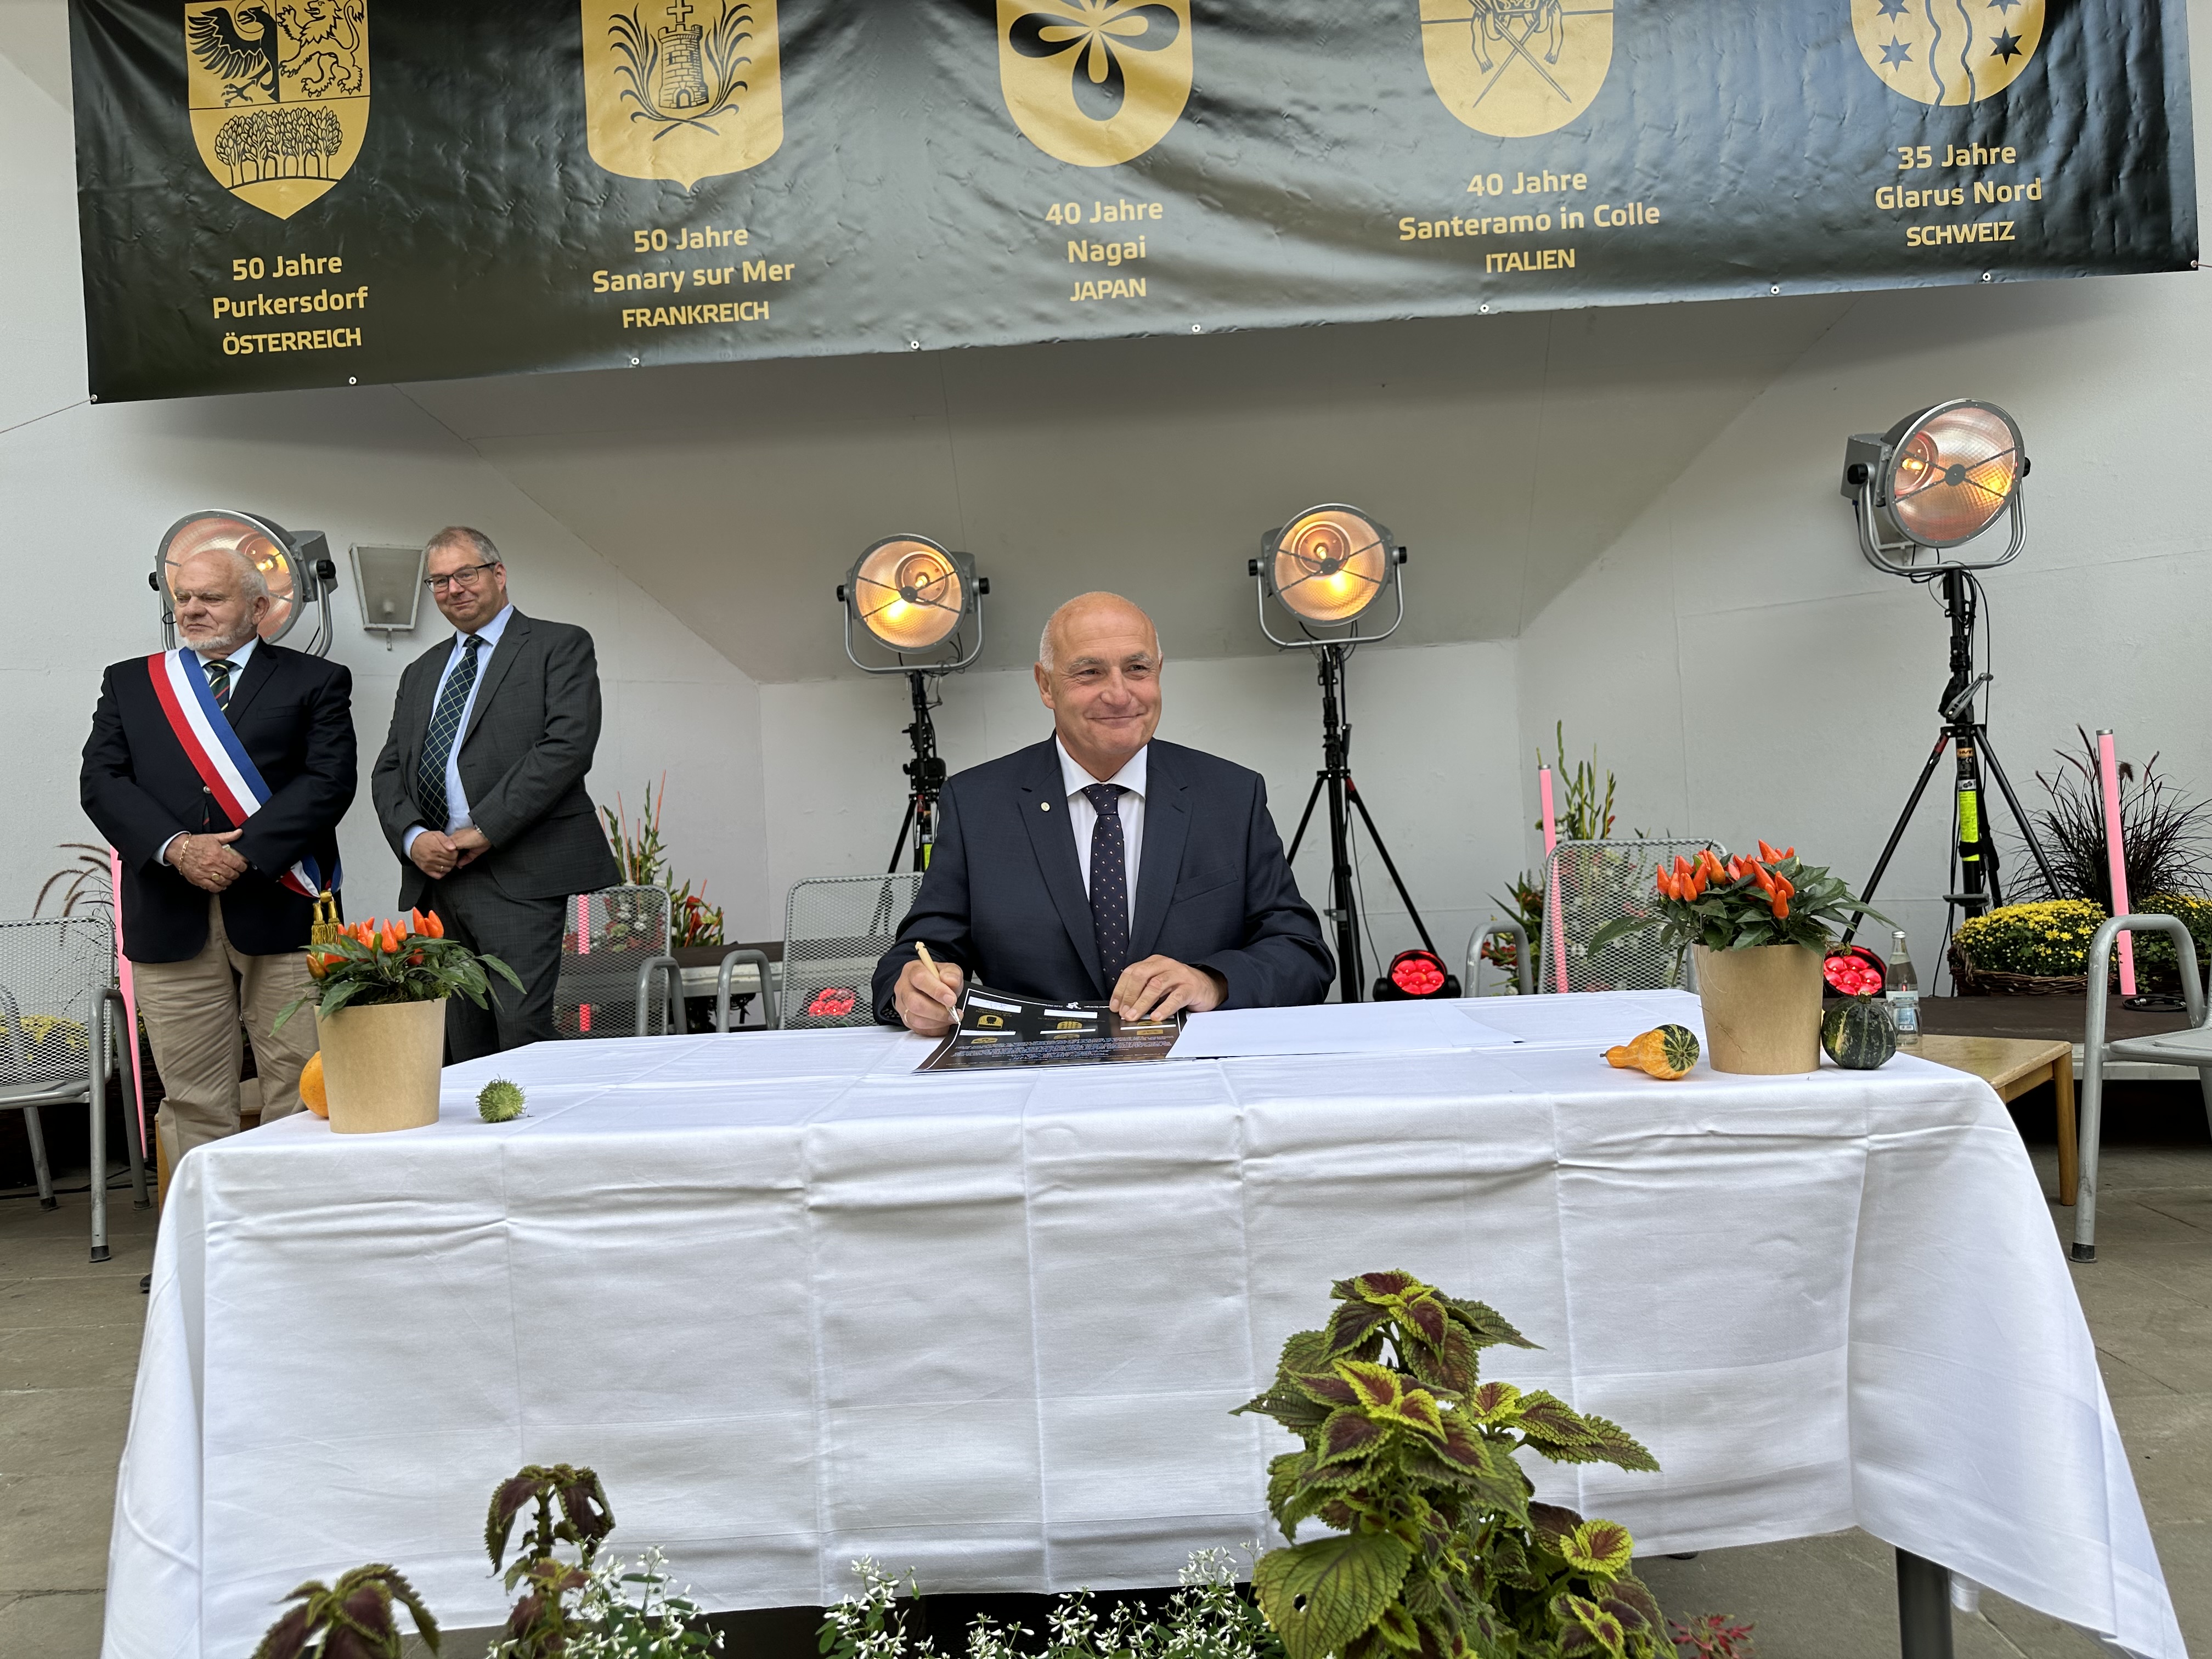  Bürgermeister-Stellvertreter Viktor Weinzinger aus Purkersdorf (Österreich) bei der Unterzeichnung 